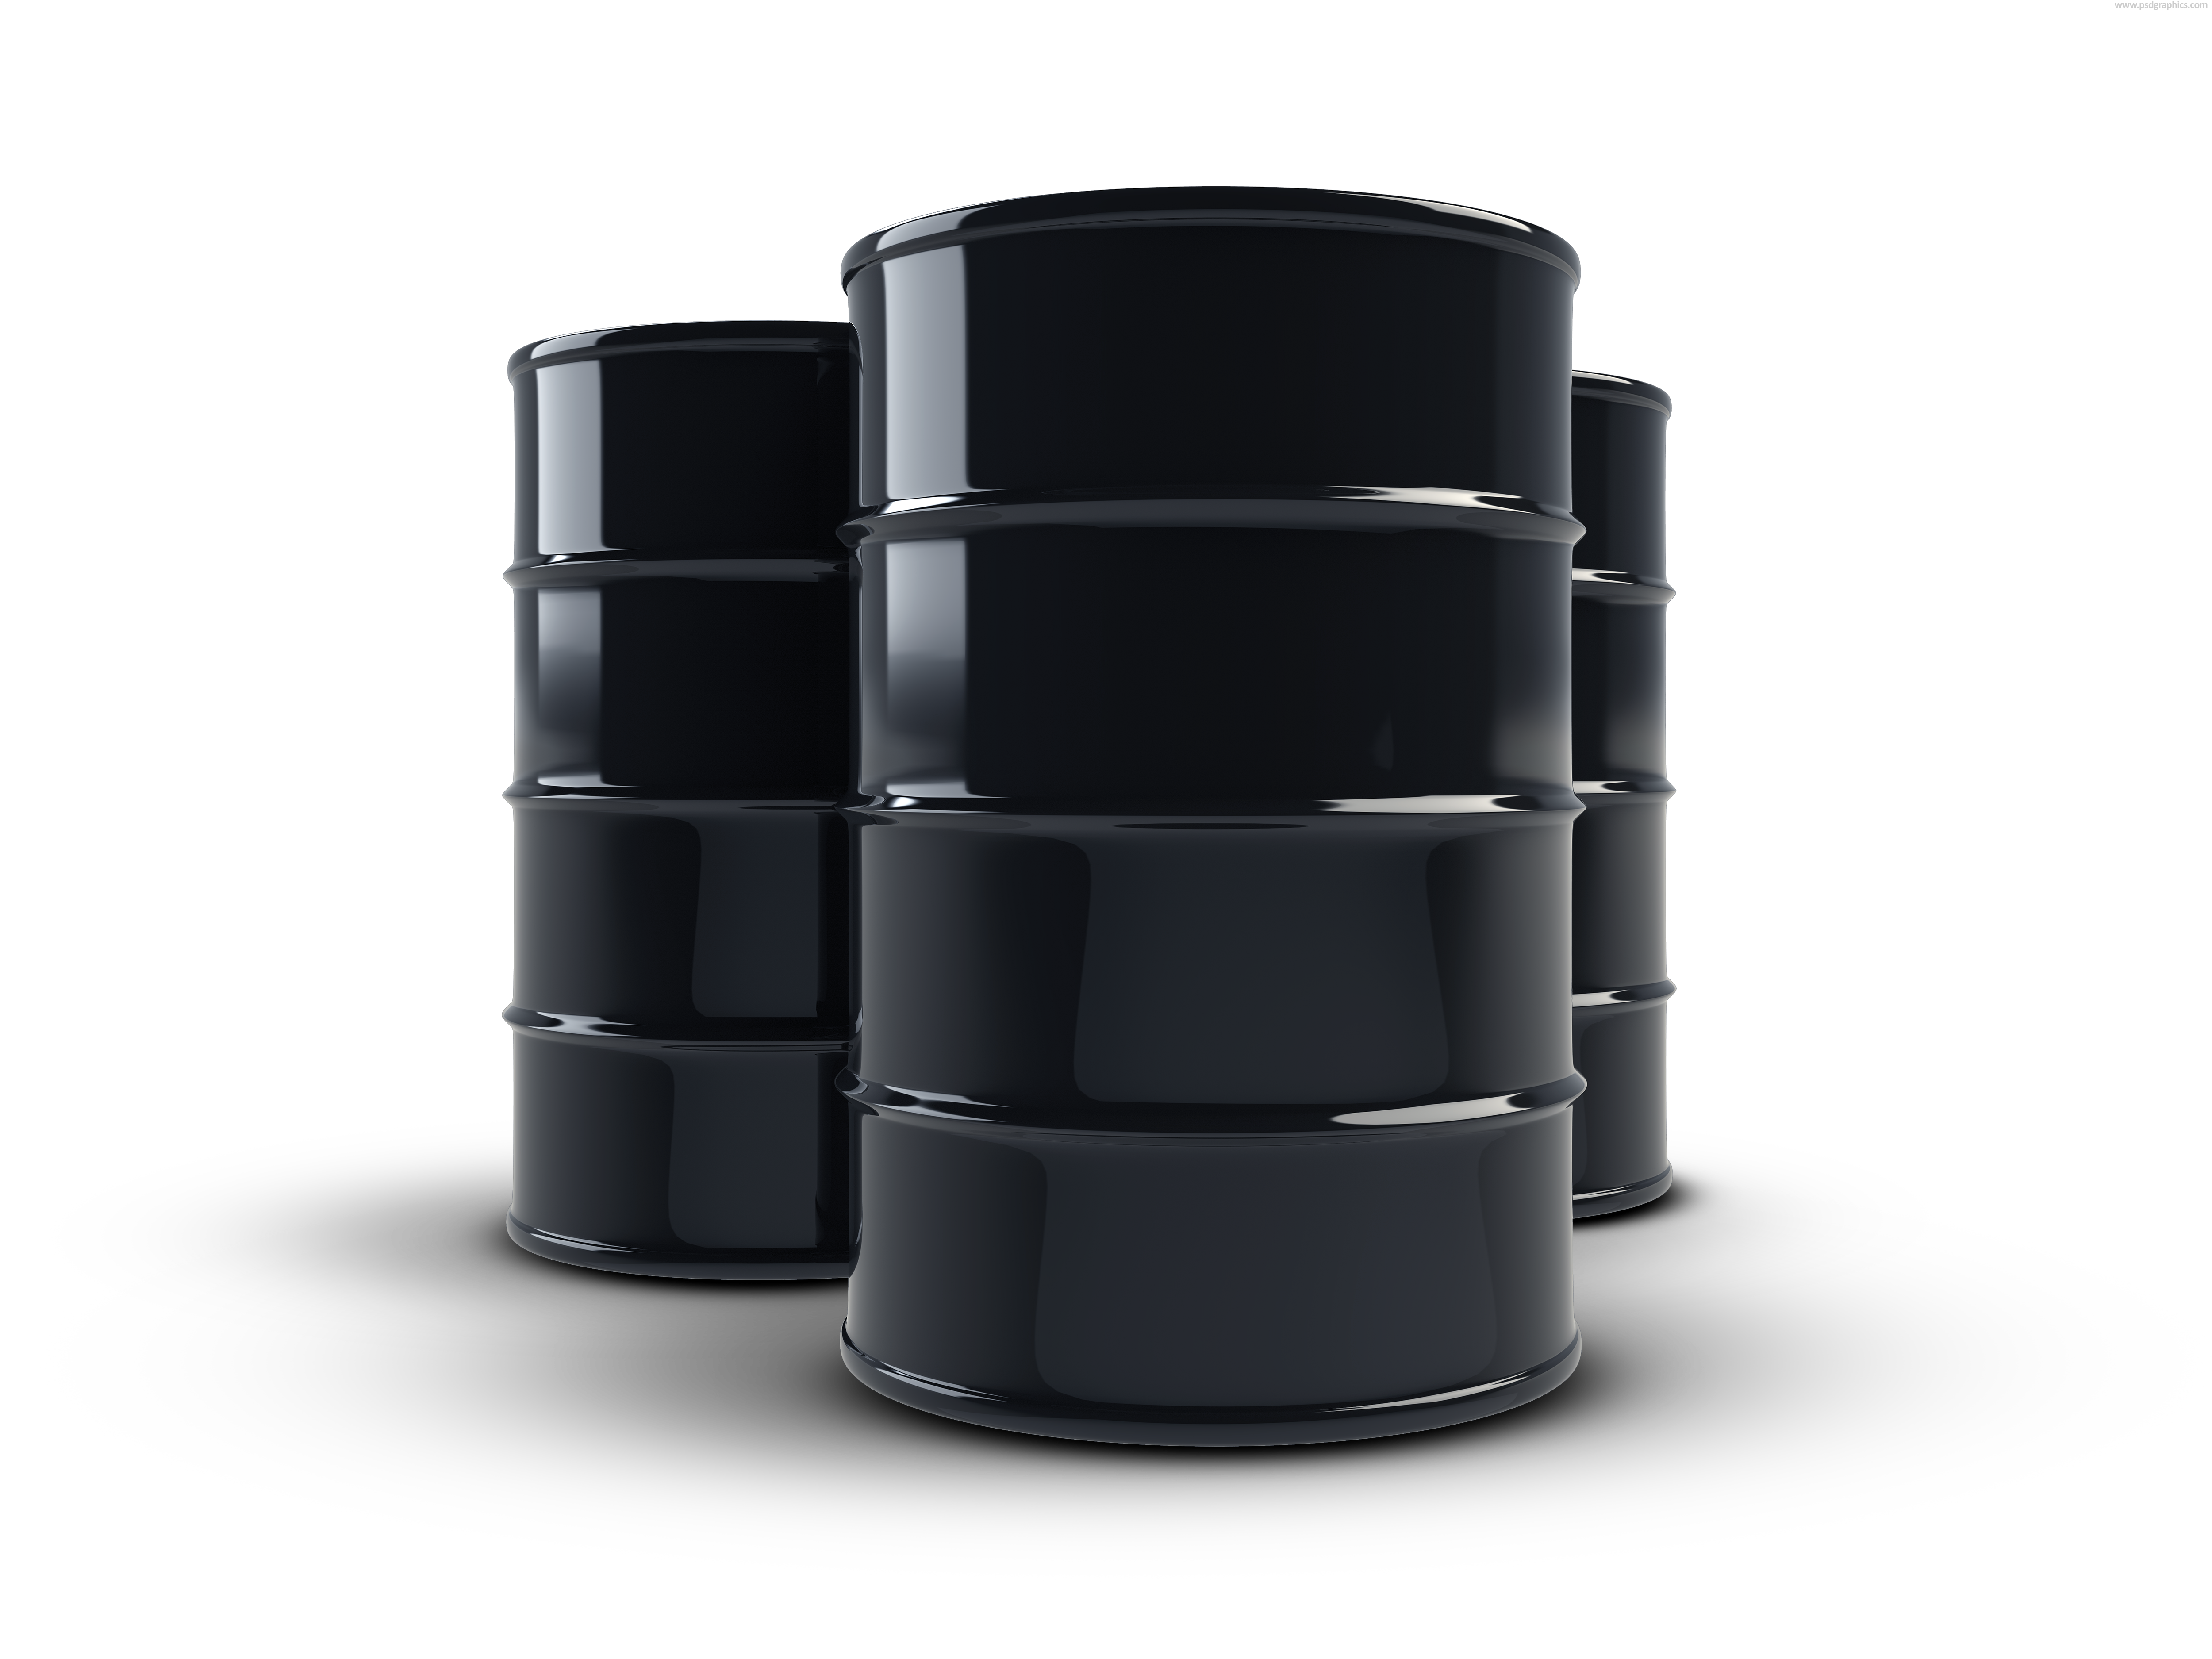 Oil Barrels Png - Oil Barrel, Transparent background PNG HD thumbnail